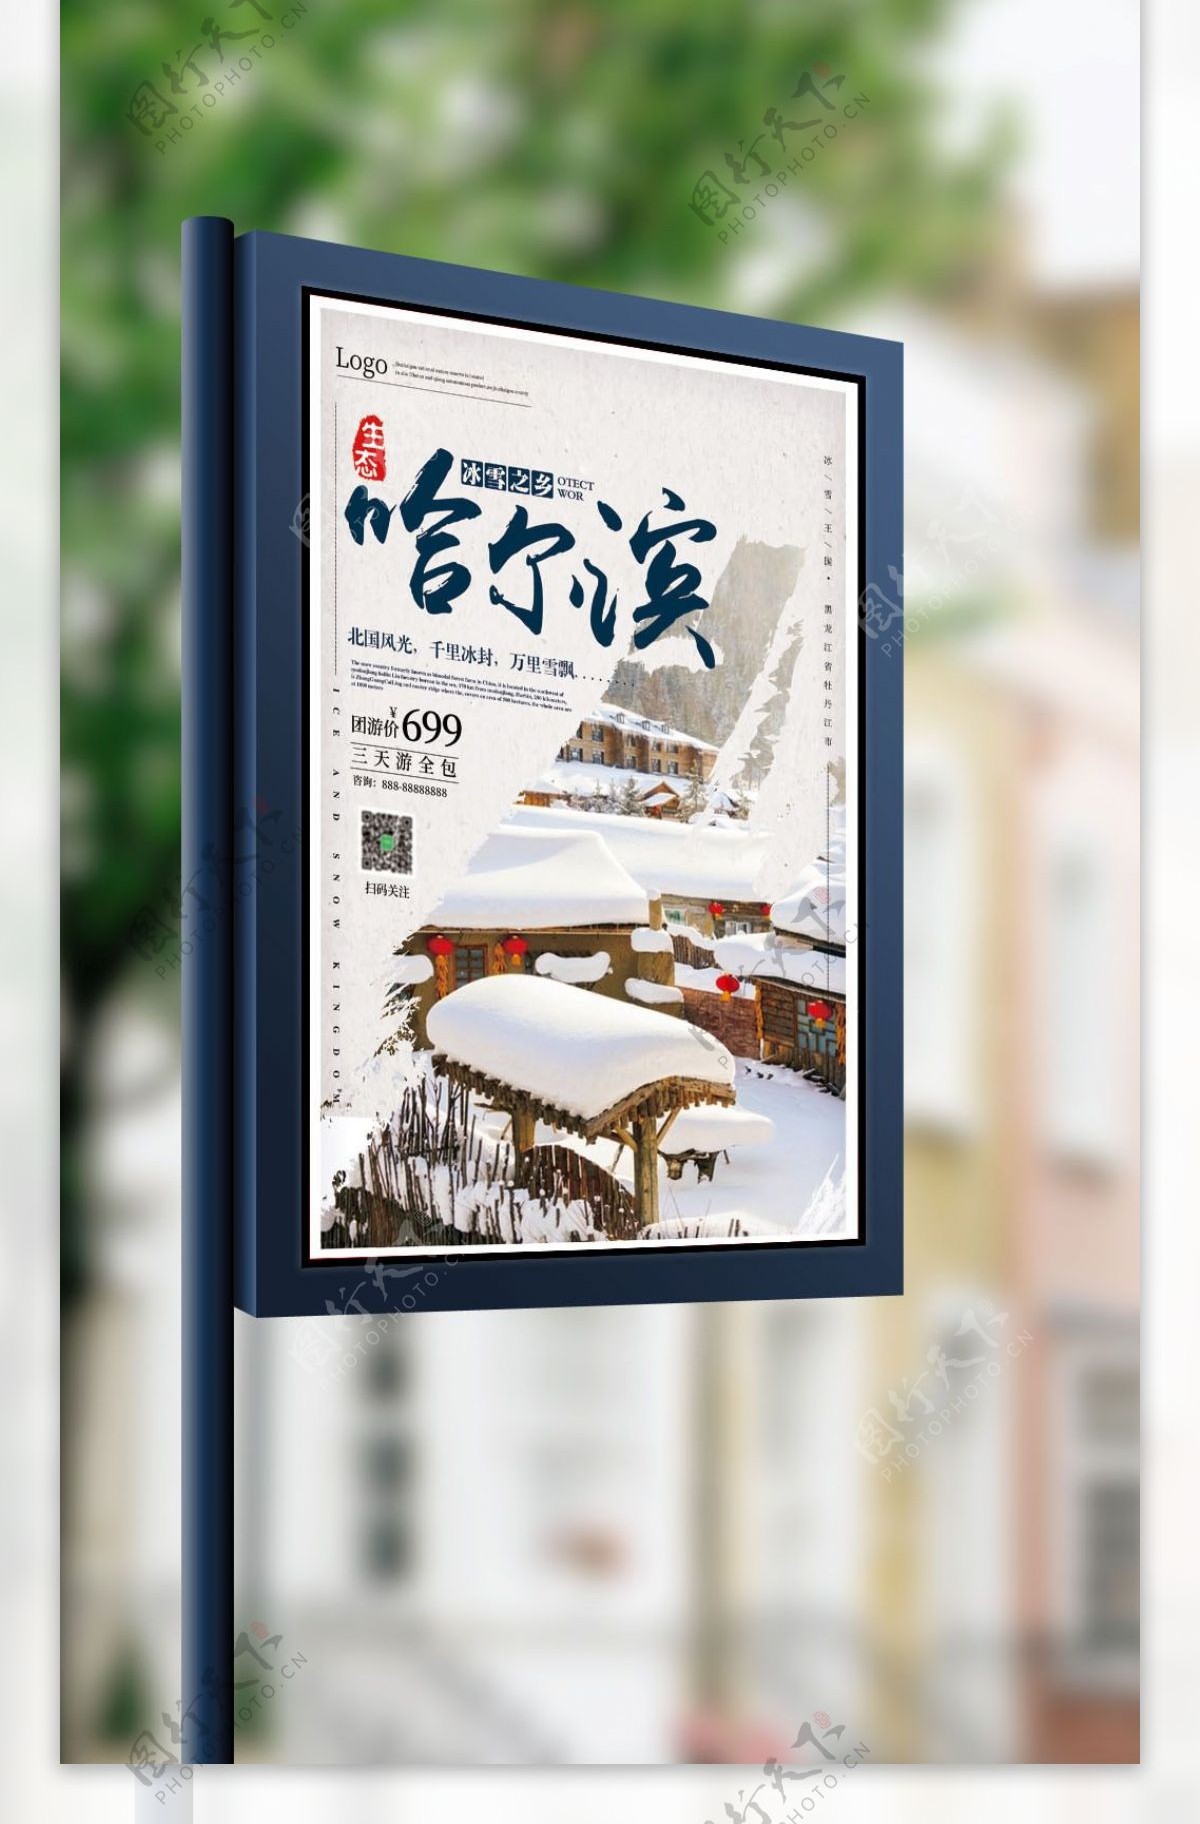 哈尔滨旅游海报设计